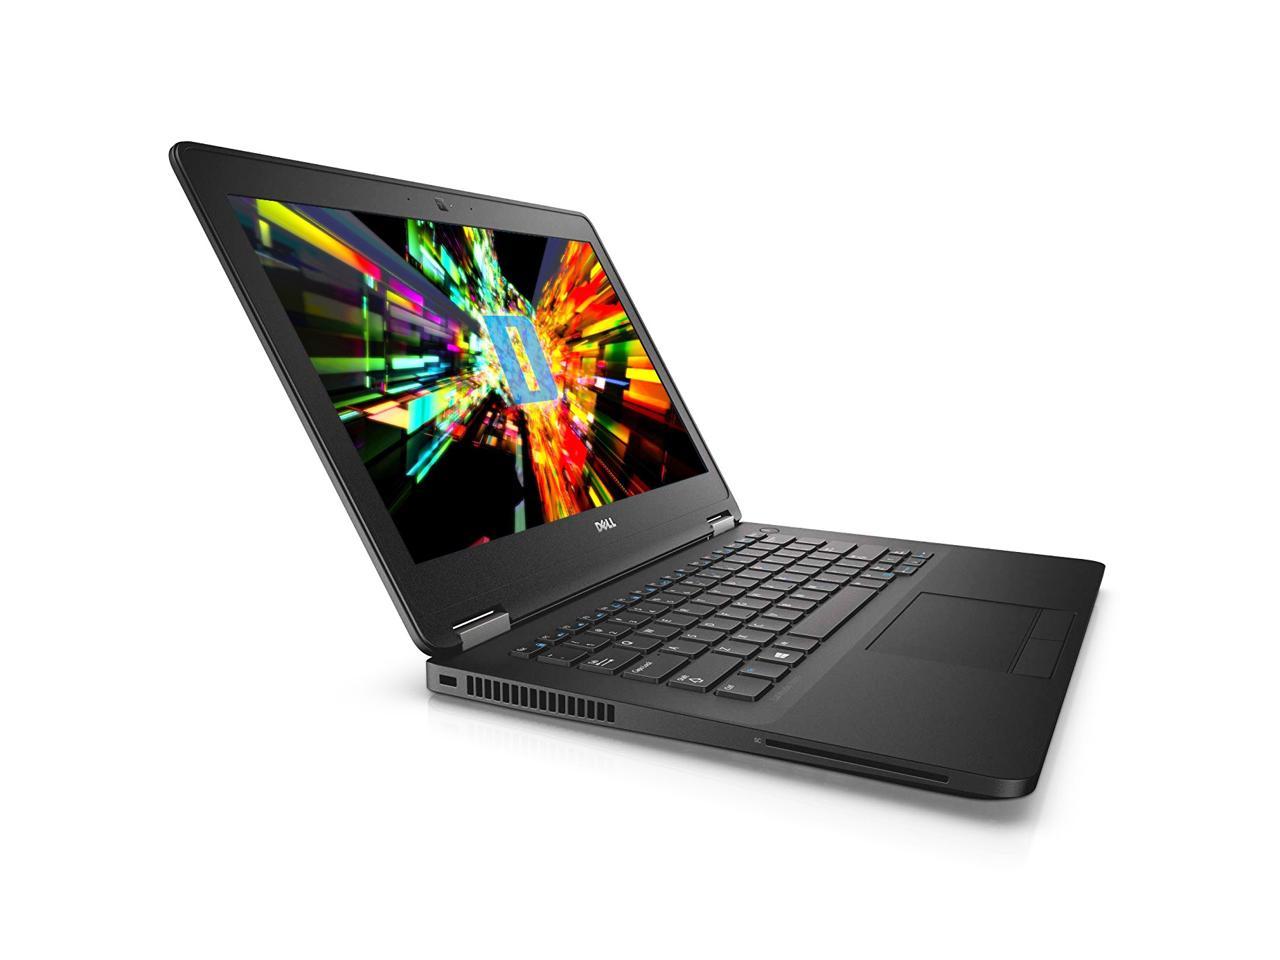 Dell Latitude E7270 12.5" Laptop, Intel Core i5 6300U 2.4Ghz, 8GB DDR4, 256GB M.2 SSD, HDMI, Webcam, Windows 10